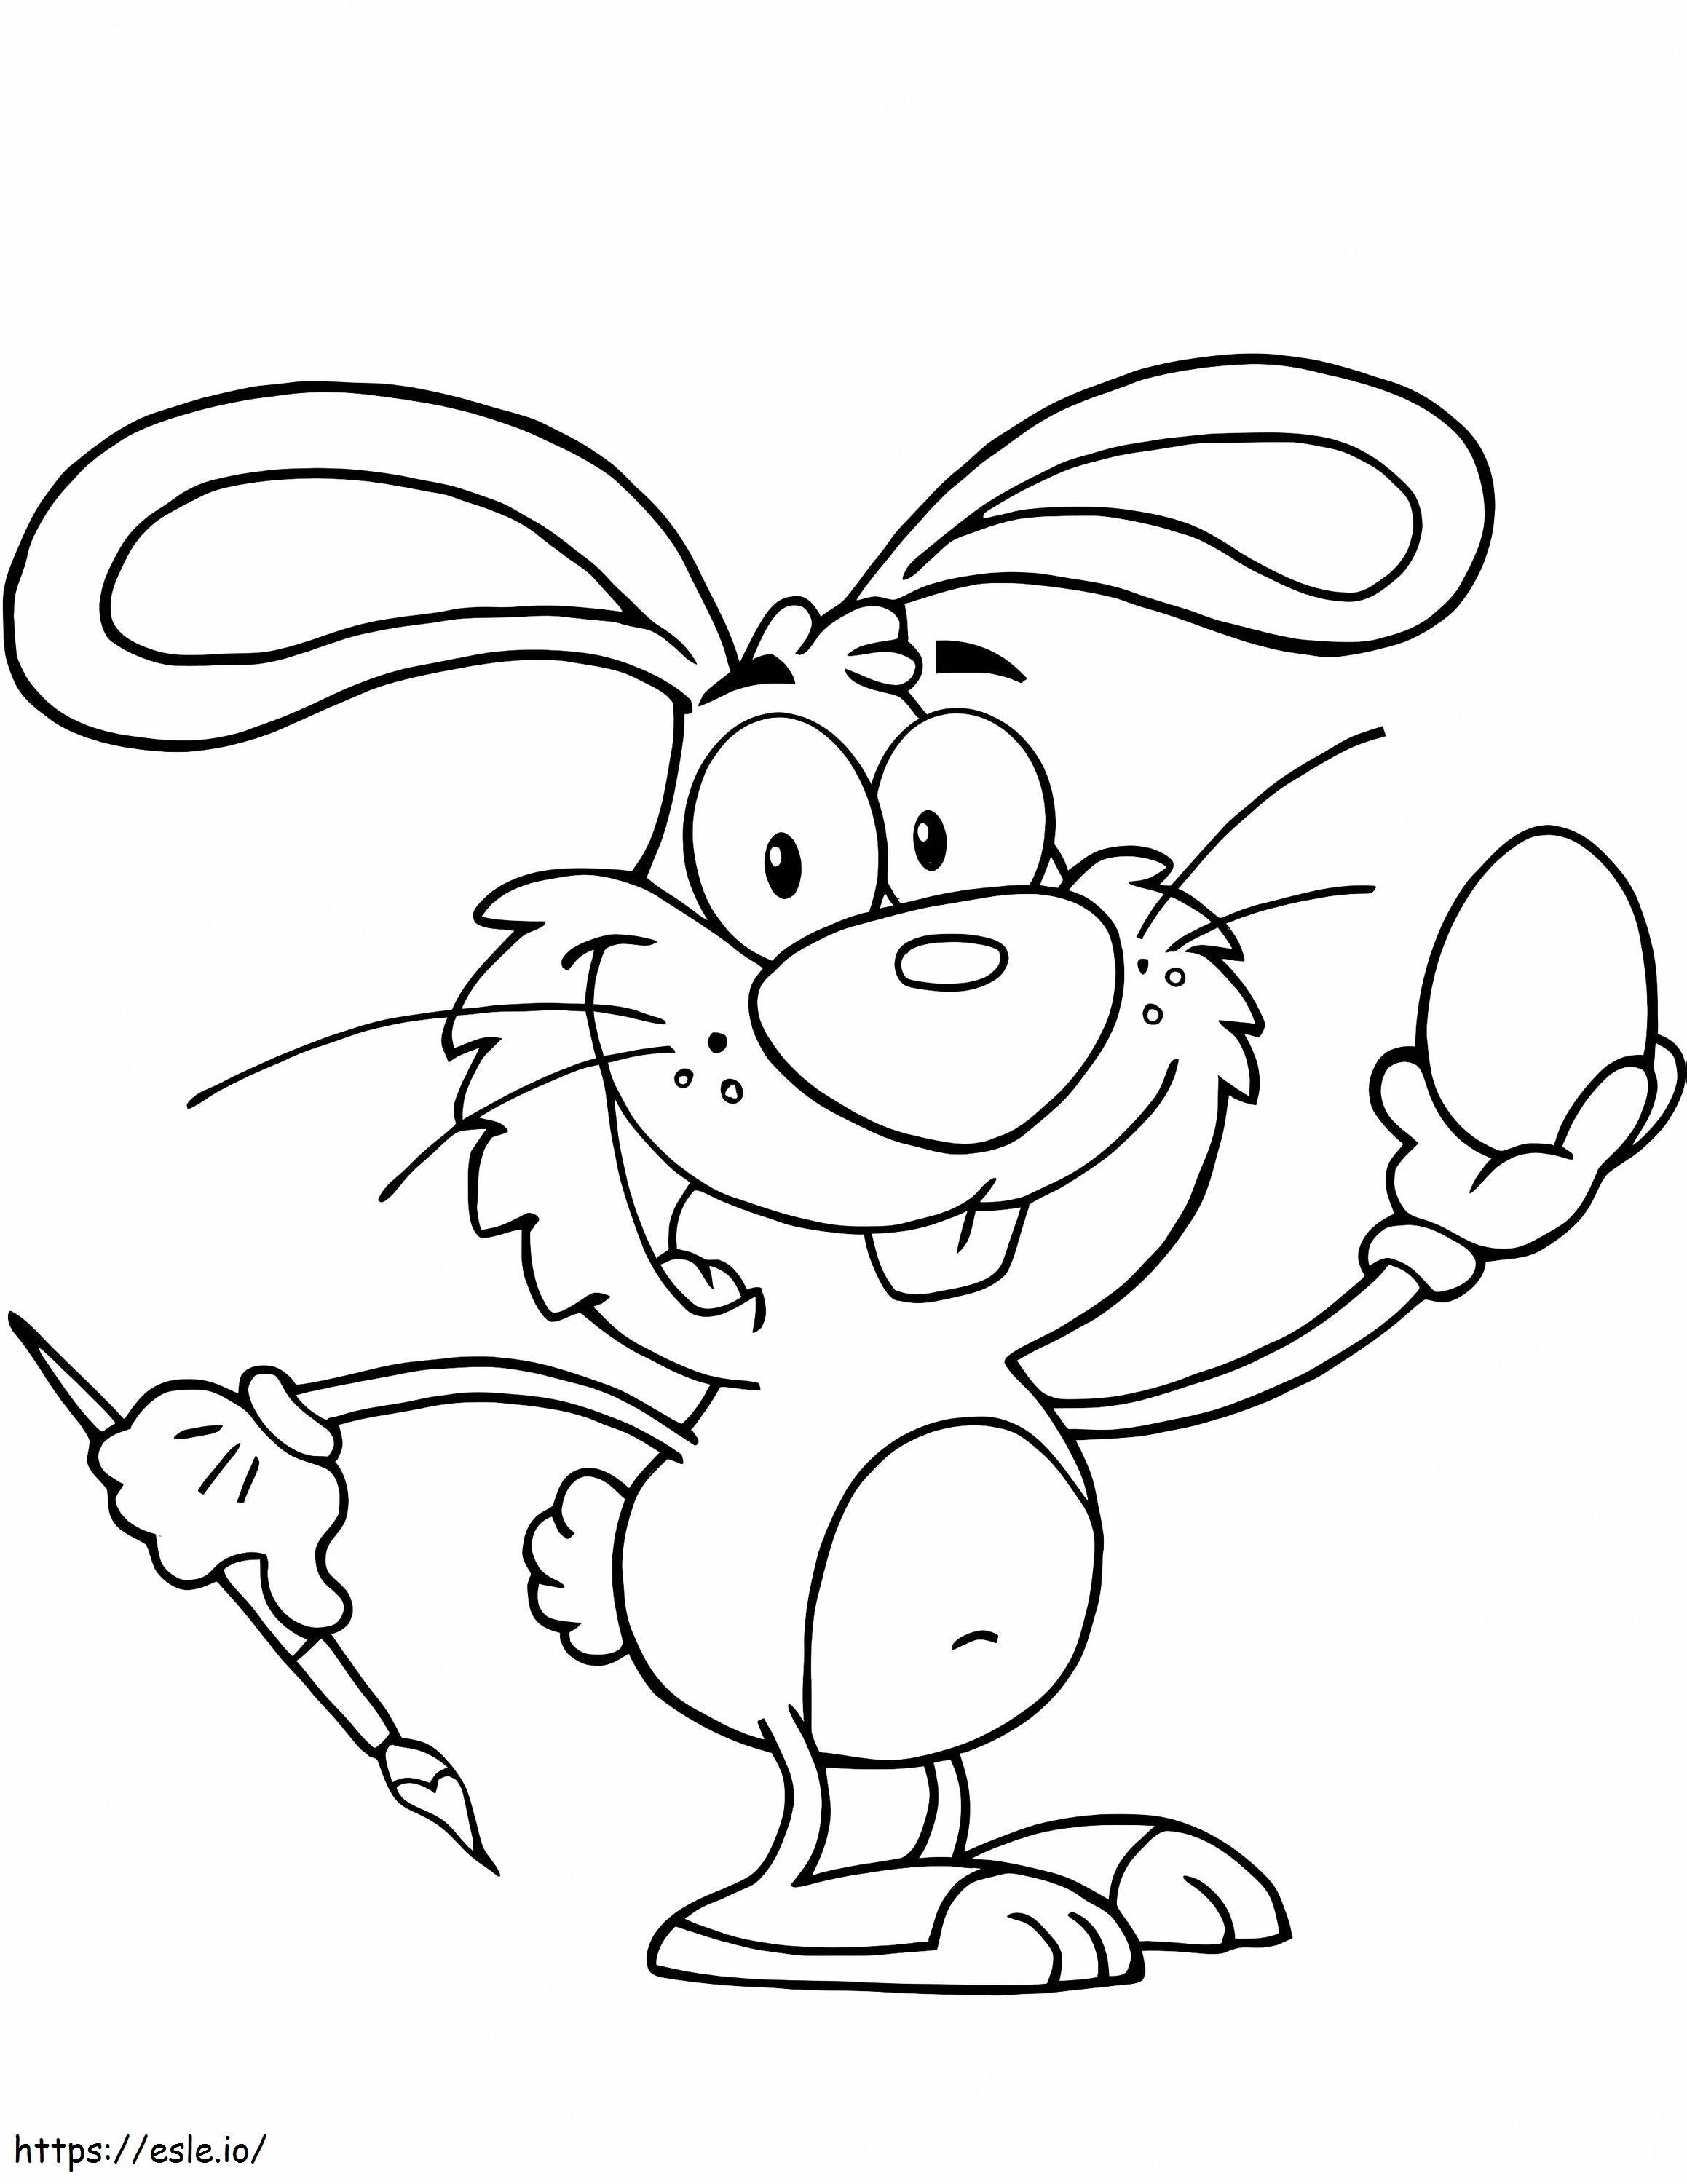 Easter Bunny Rysunek Jajko kolorowanka